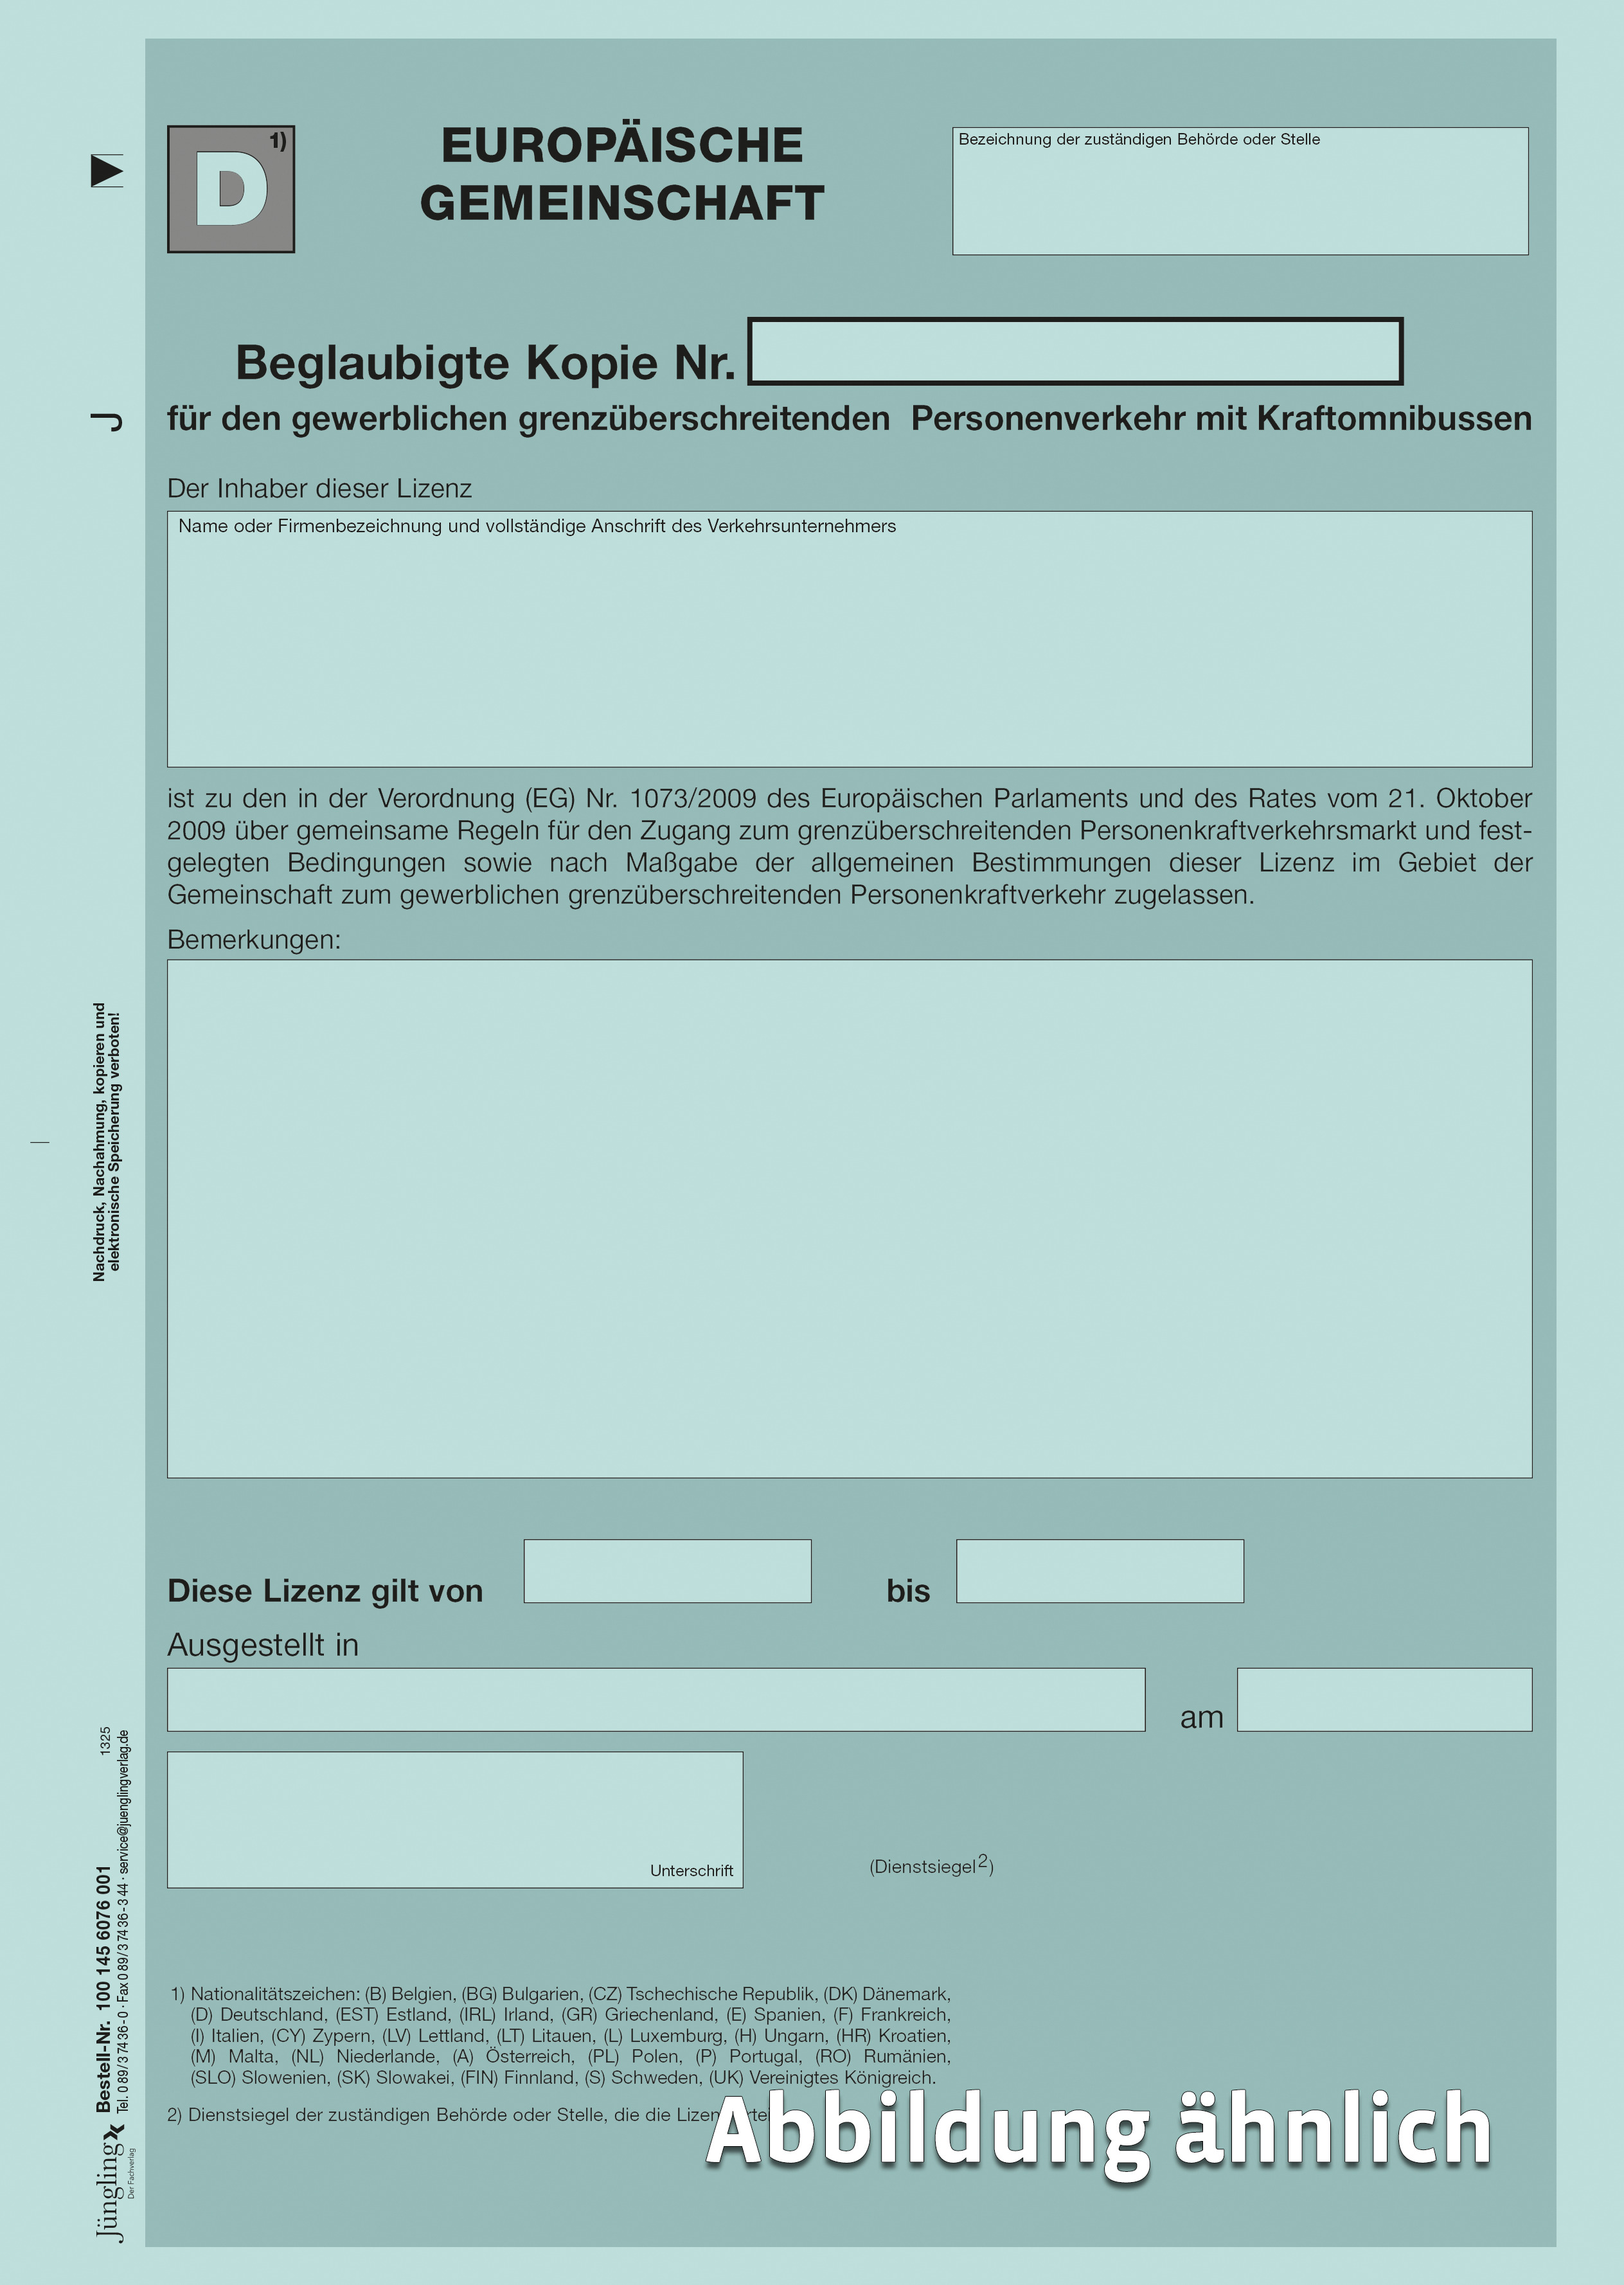 EU-Lizenz für den gewerblichen grenzüberschreitenden Verkehr mit KOM  (beglaubigte Kopie), Pantone hellblau 290c, A4 (Variante mit